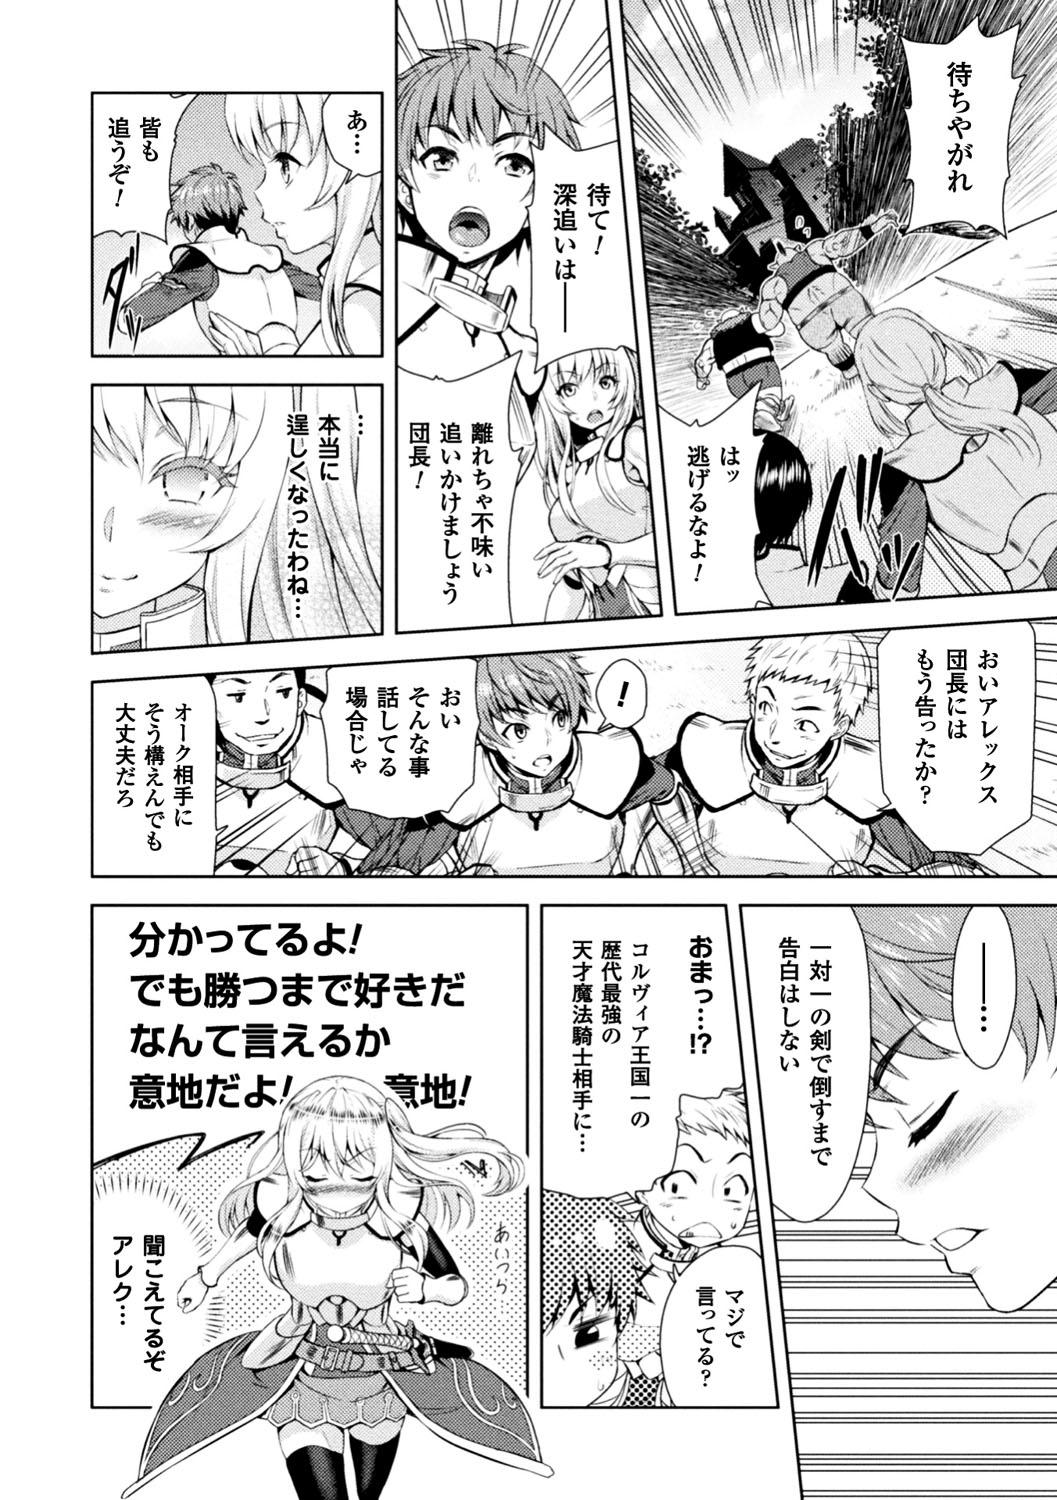 Seigi no Heroine Kangoku File Vol. 13 9